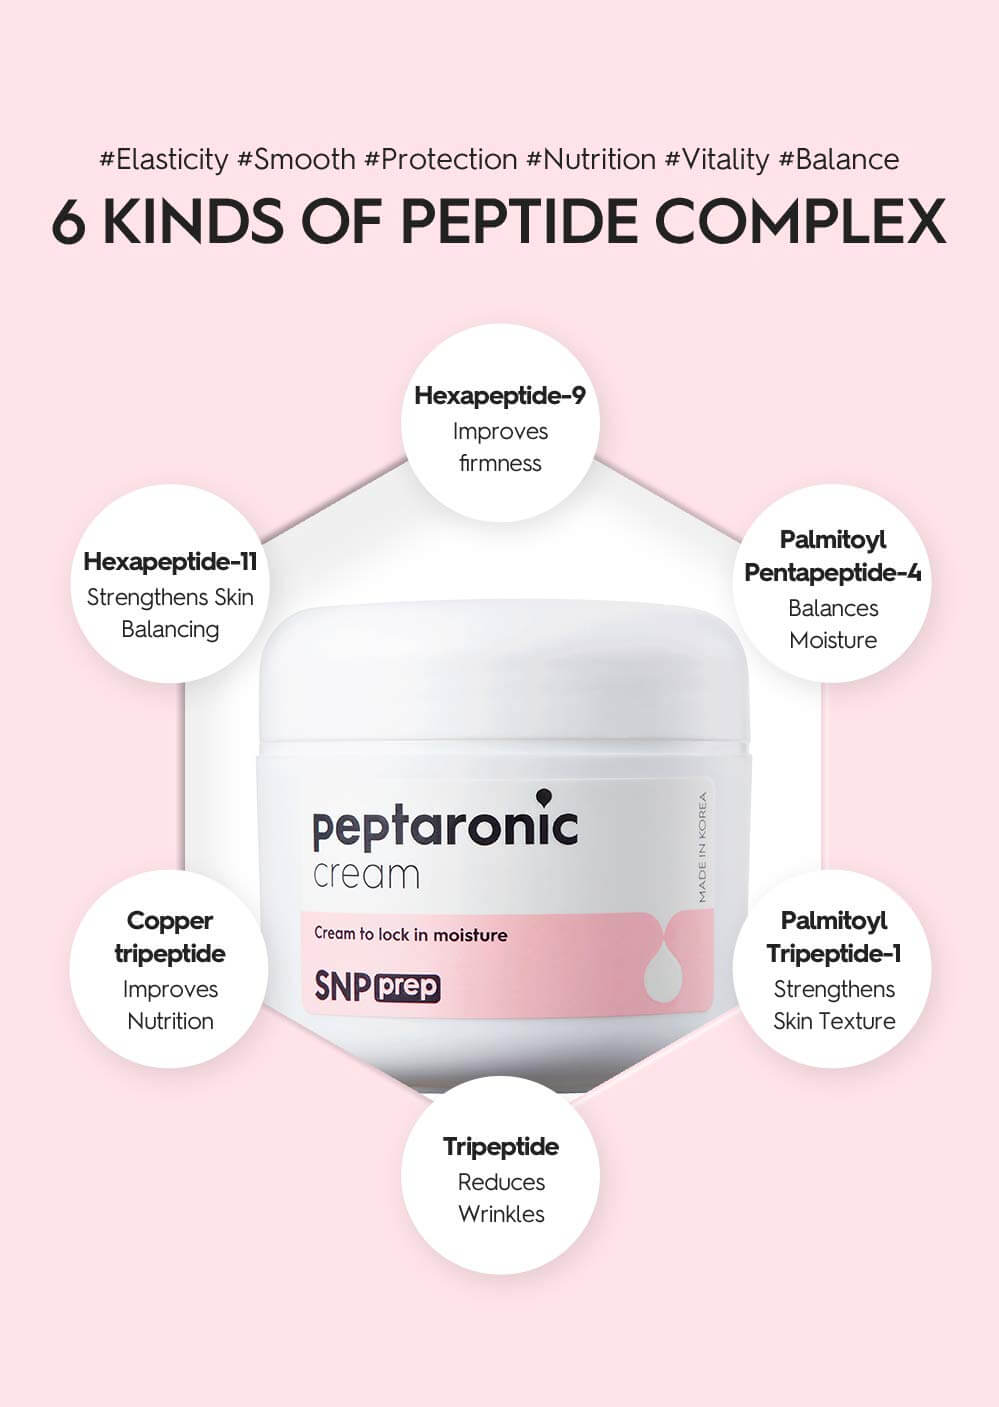 snp prep peptaronic cream ingredients, snp prep peptaronic cream review , SNP PREP PEPTARONIC CREAM , ครีมบำรุงผิวหน้า SNP